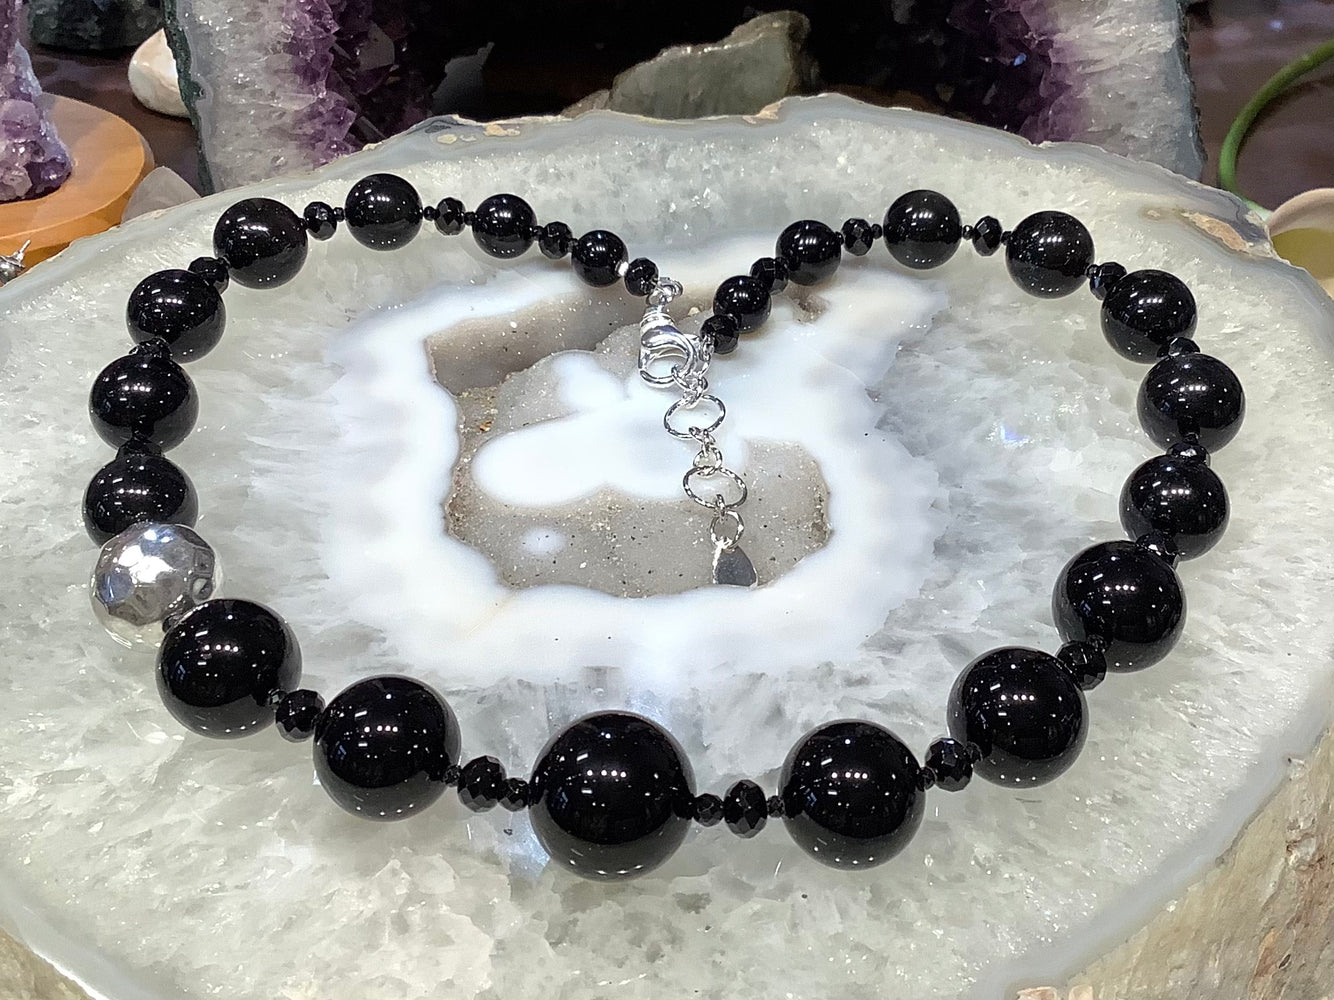 Black agate & spinel gemstone necklace